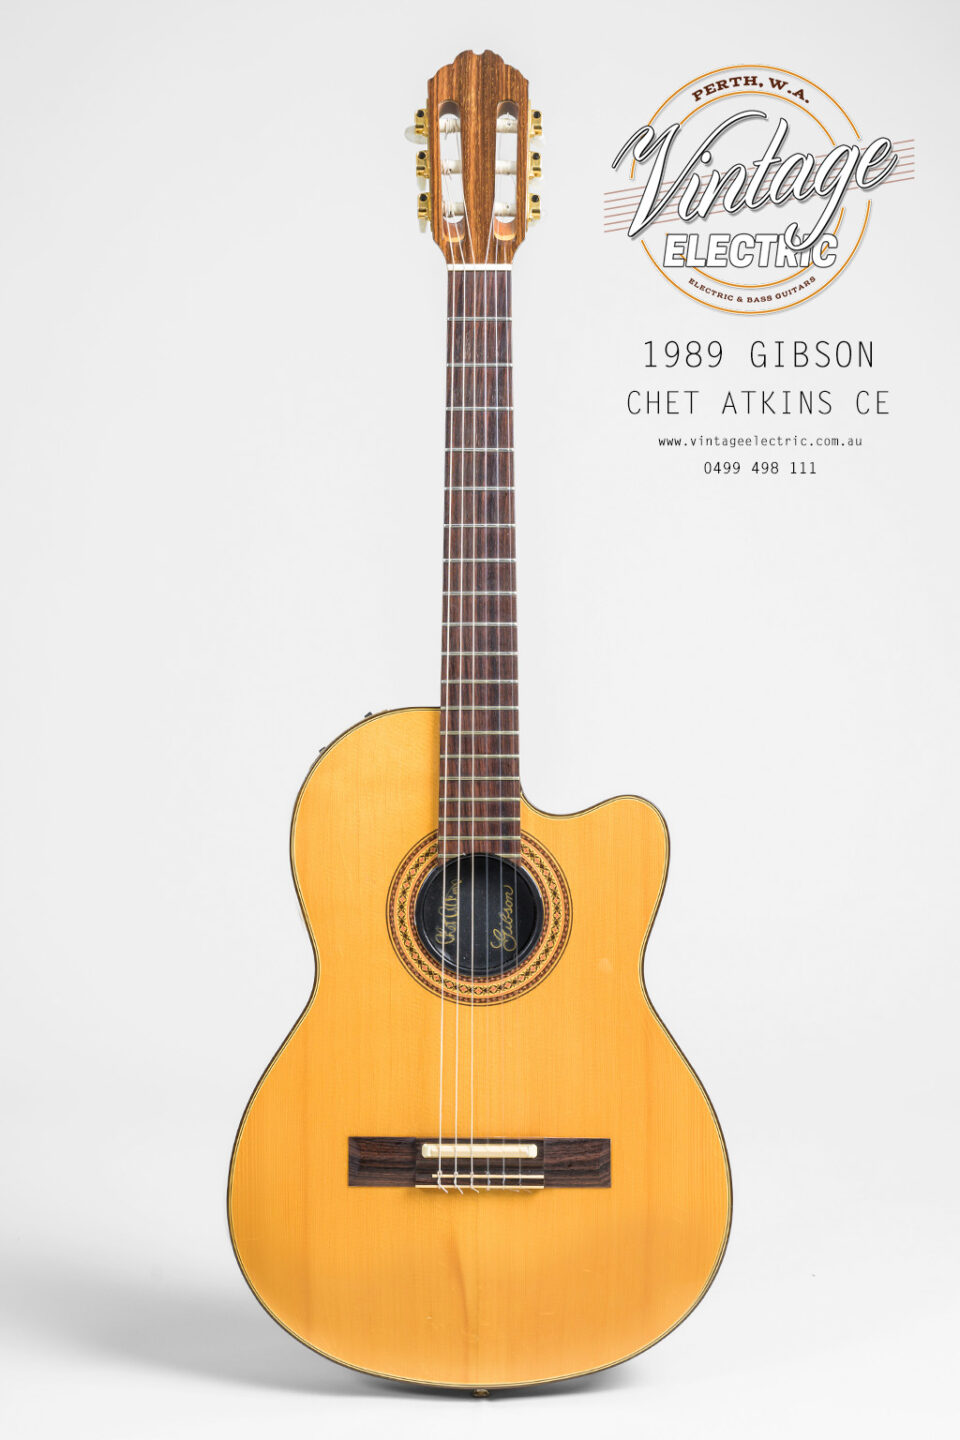 1989 Gibson Chet Atkins CE Guitar